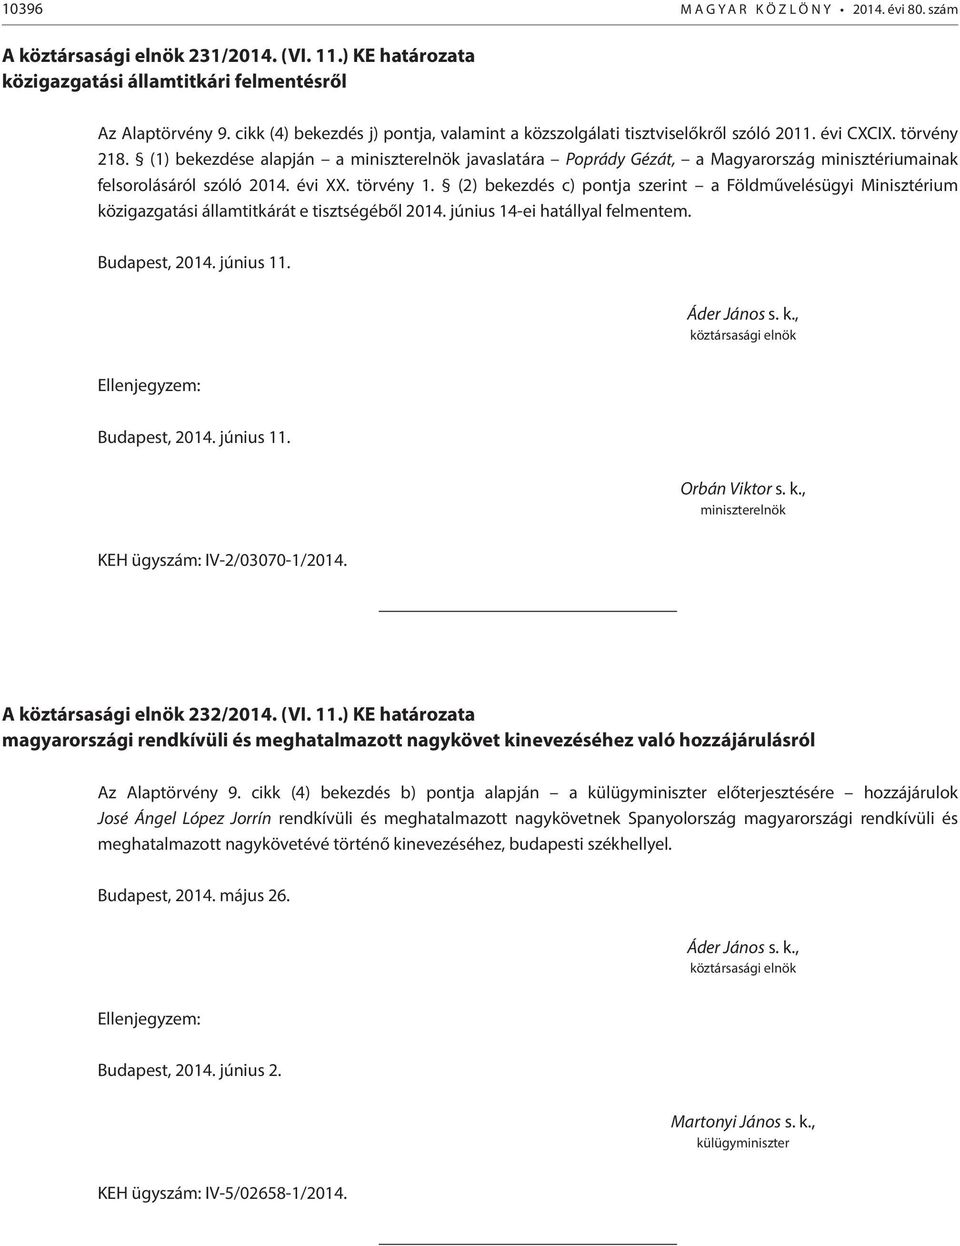 (1) bekezdése alapján a javaslatára Poprády Gézát, a Magyarország minisztériumainak felsorolásáról szóló 2014. évi XX. törvény 1.